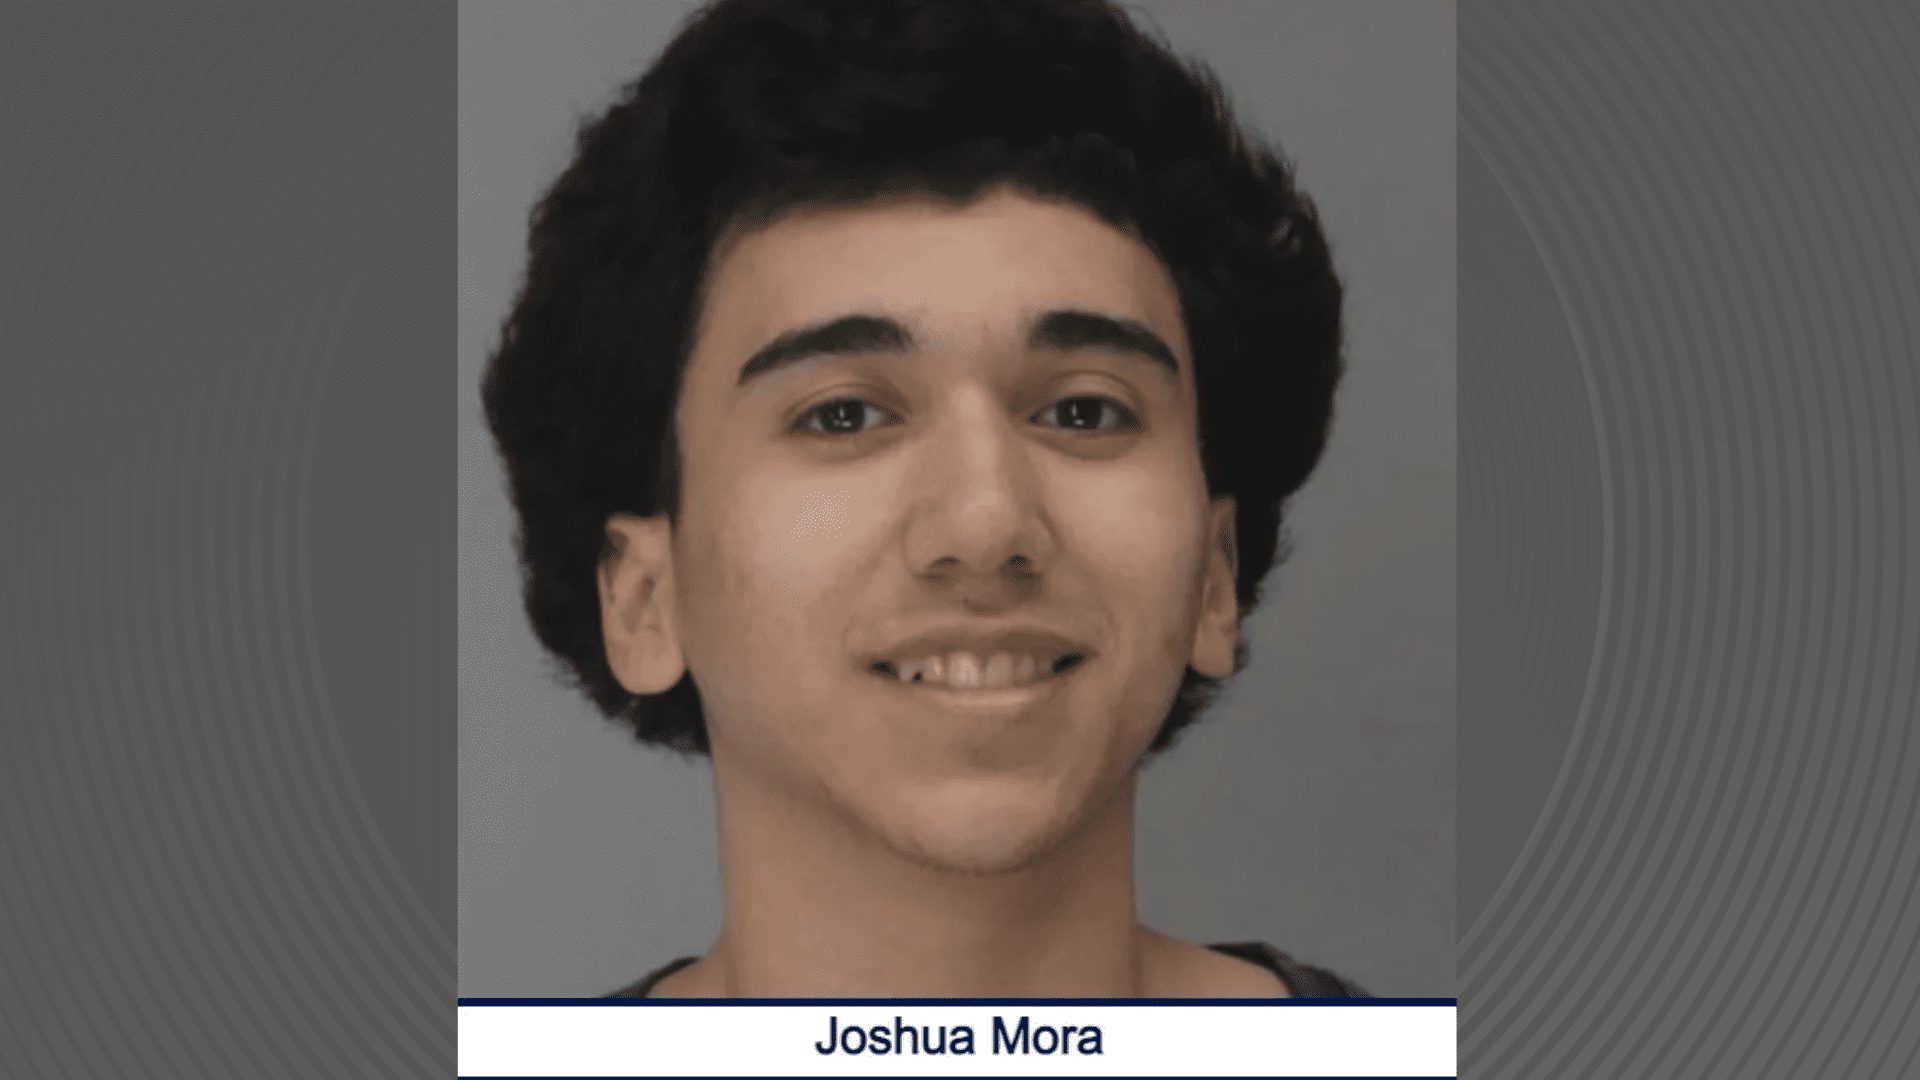 Joshua Mora